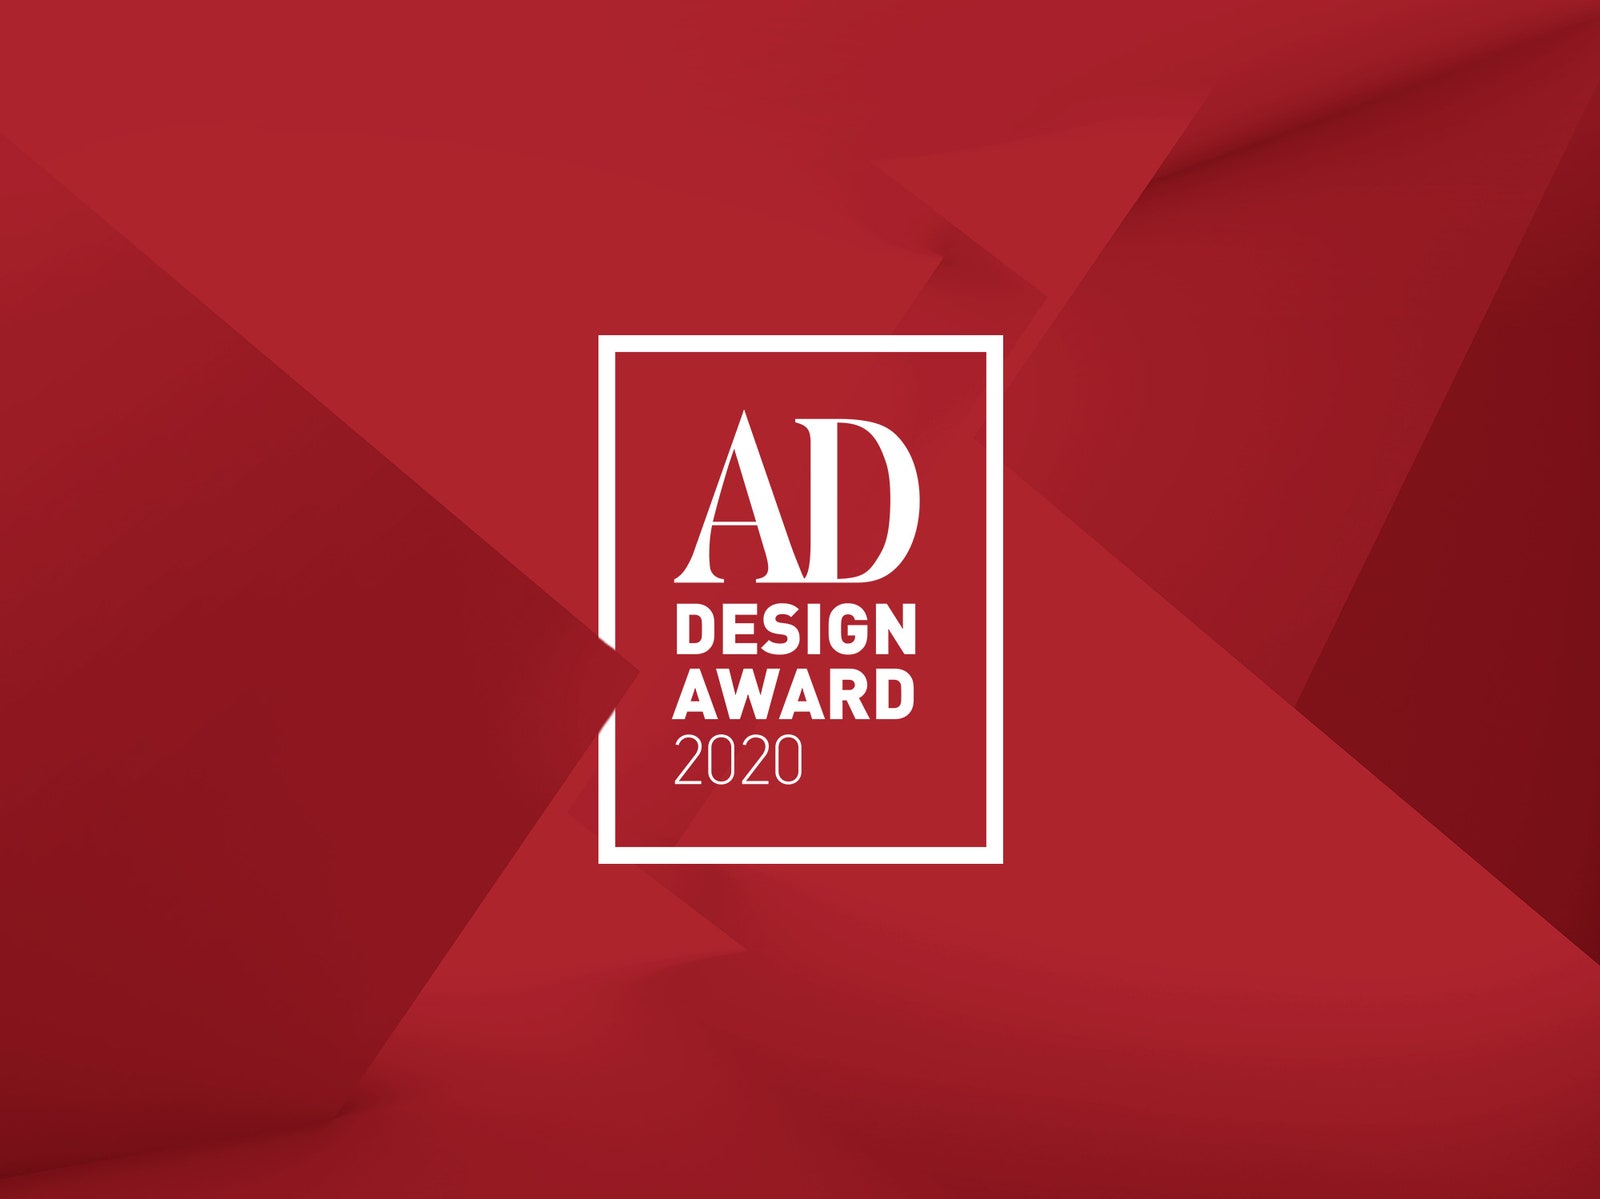 Голосование AD Design Award 2020 продлевается